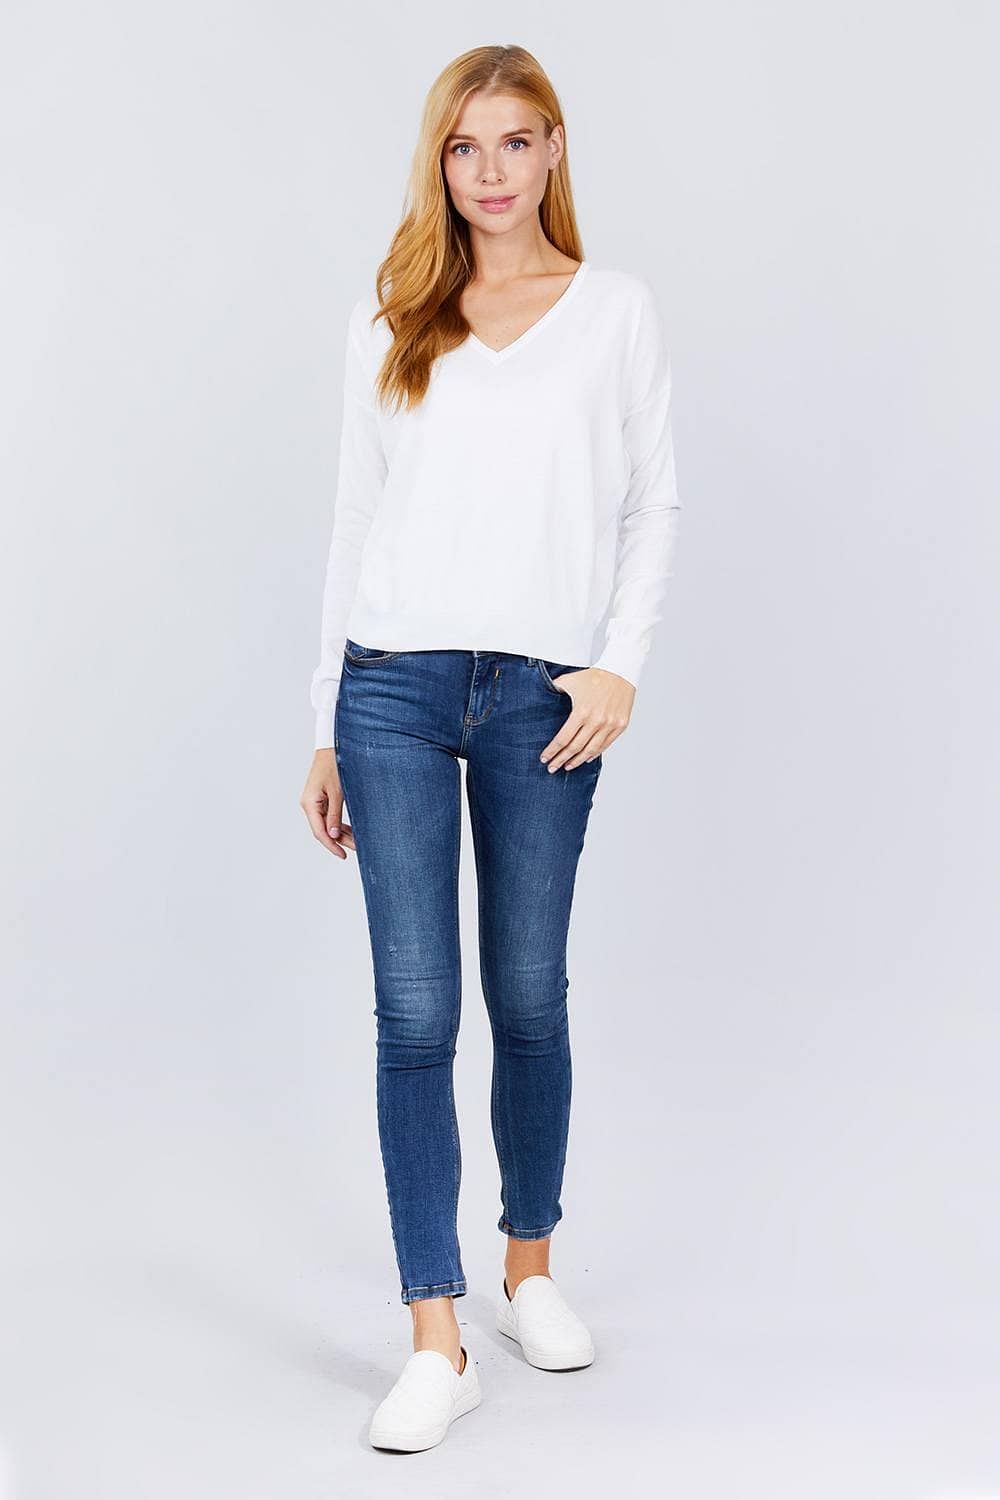 White Long Sleeve V-Neck Pullover Sweater